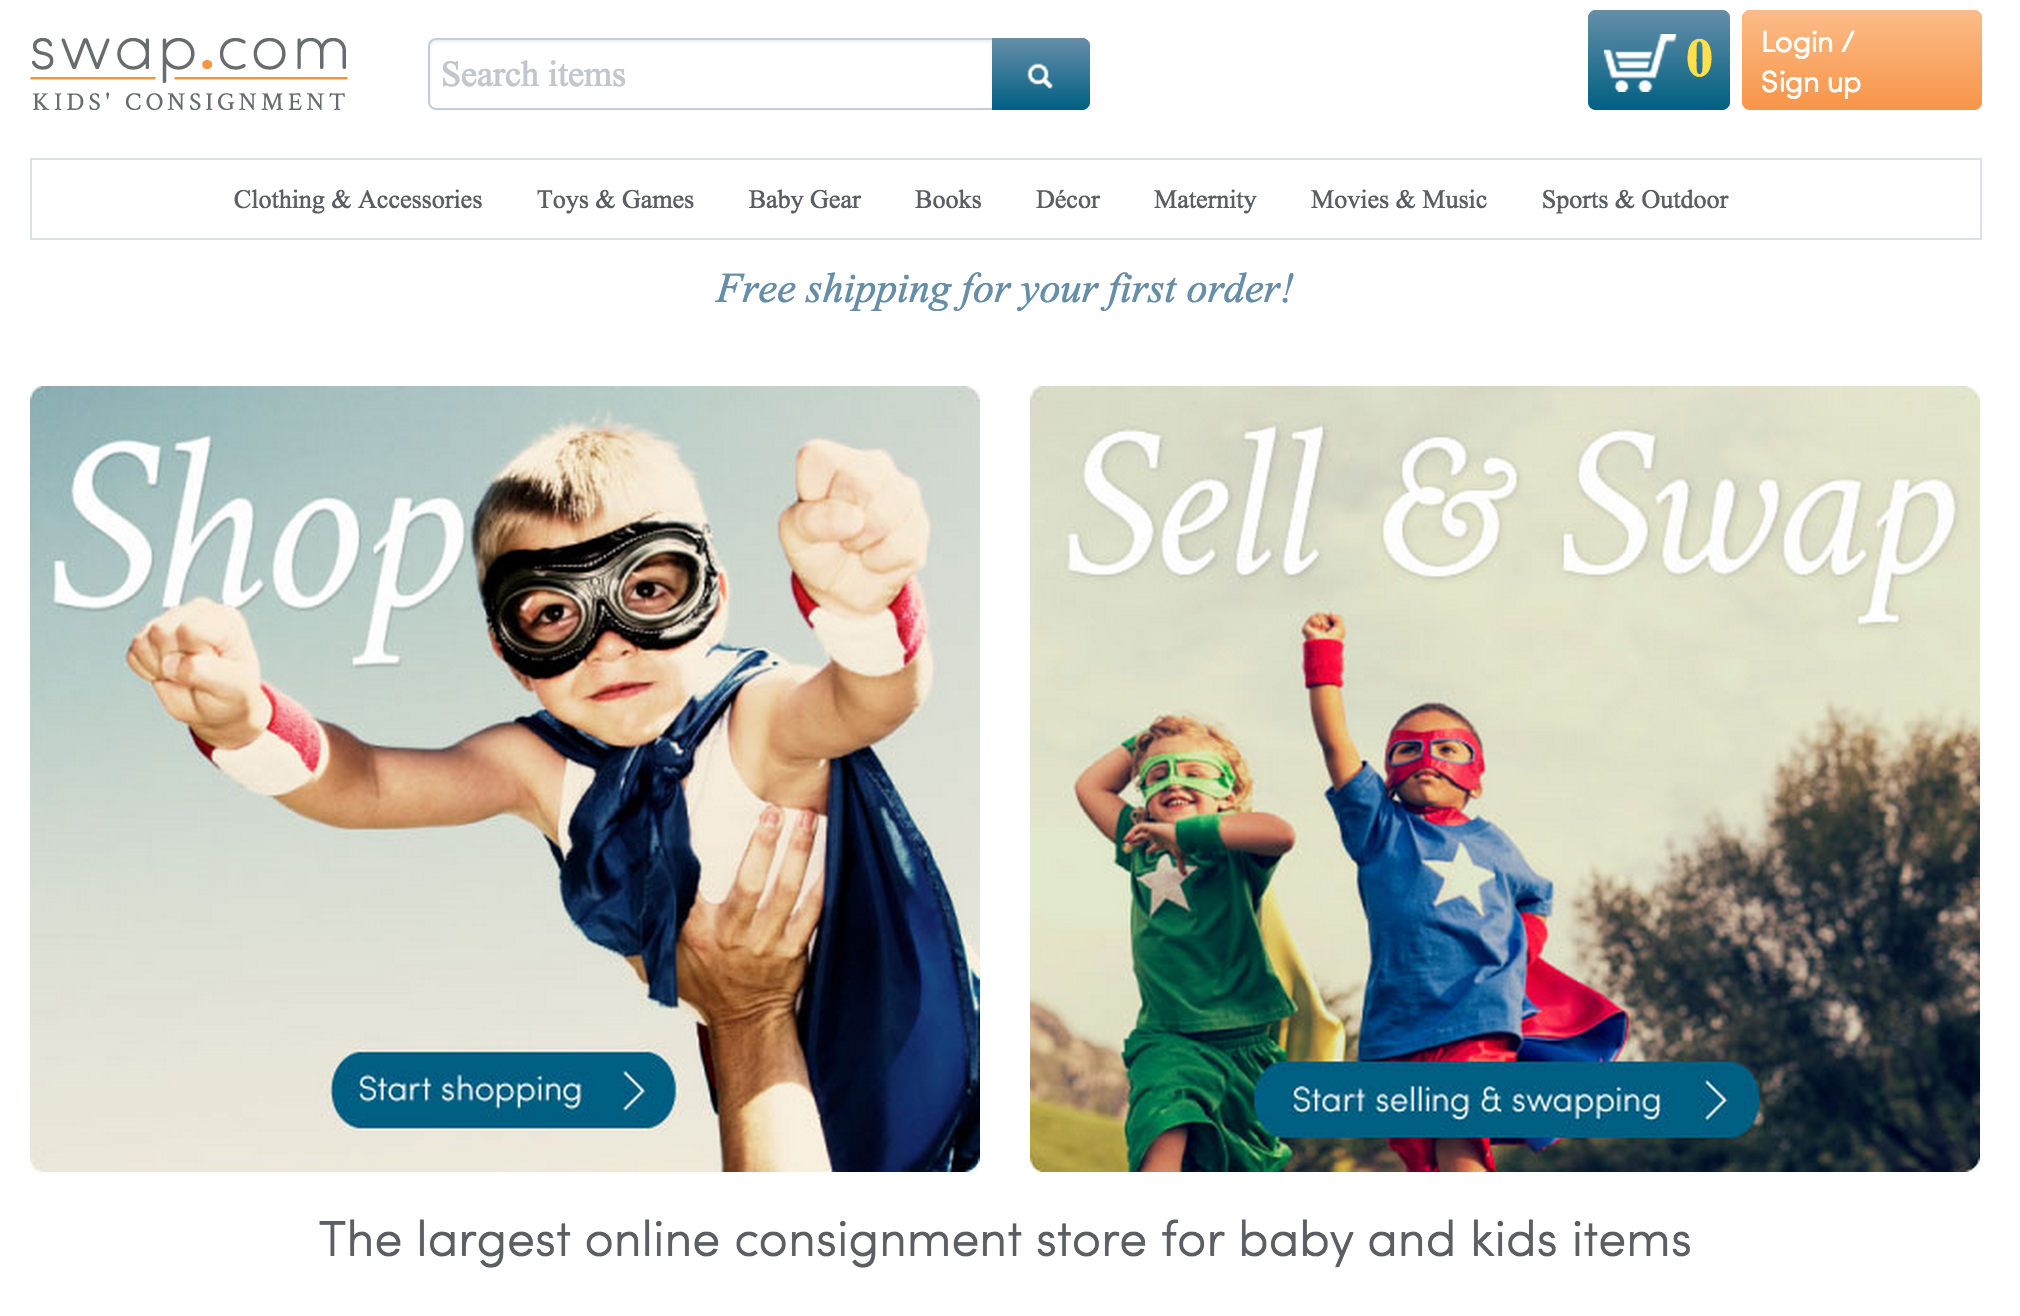 Online Consignment Shop For Kids' Items Swap.com Raises $4 Million ...